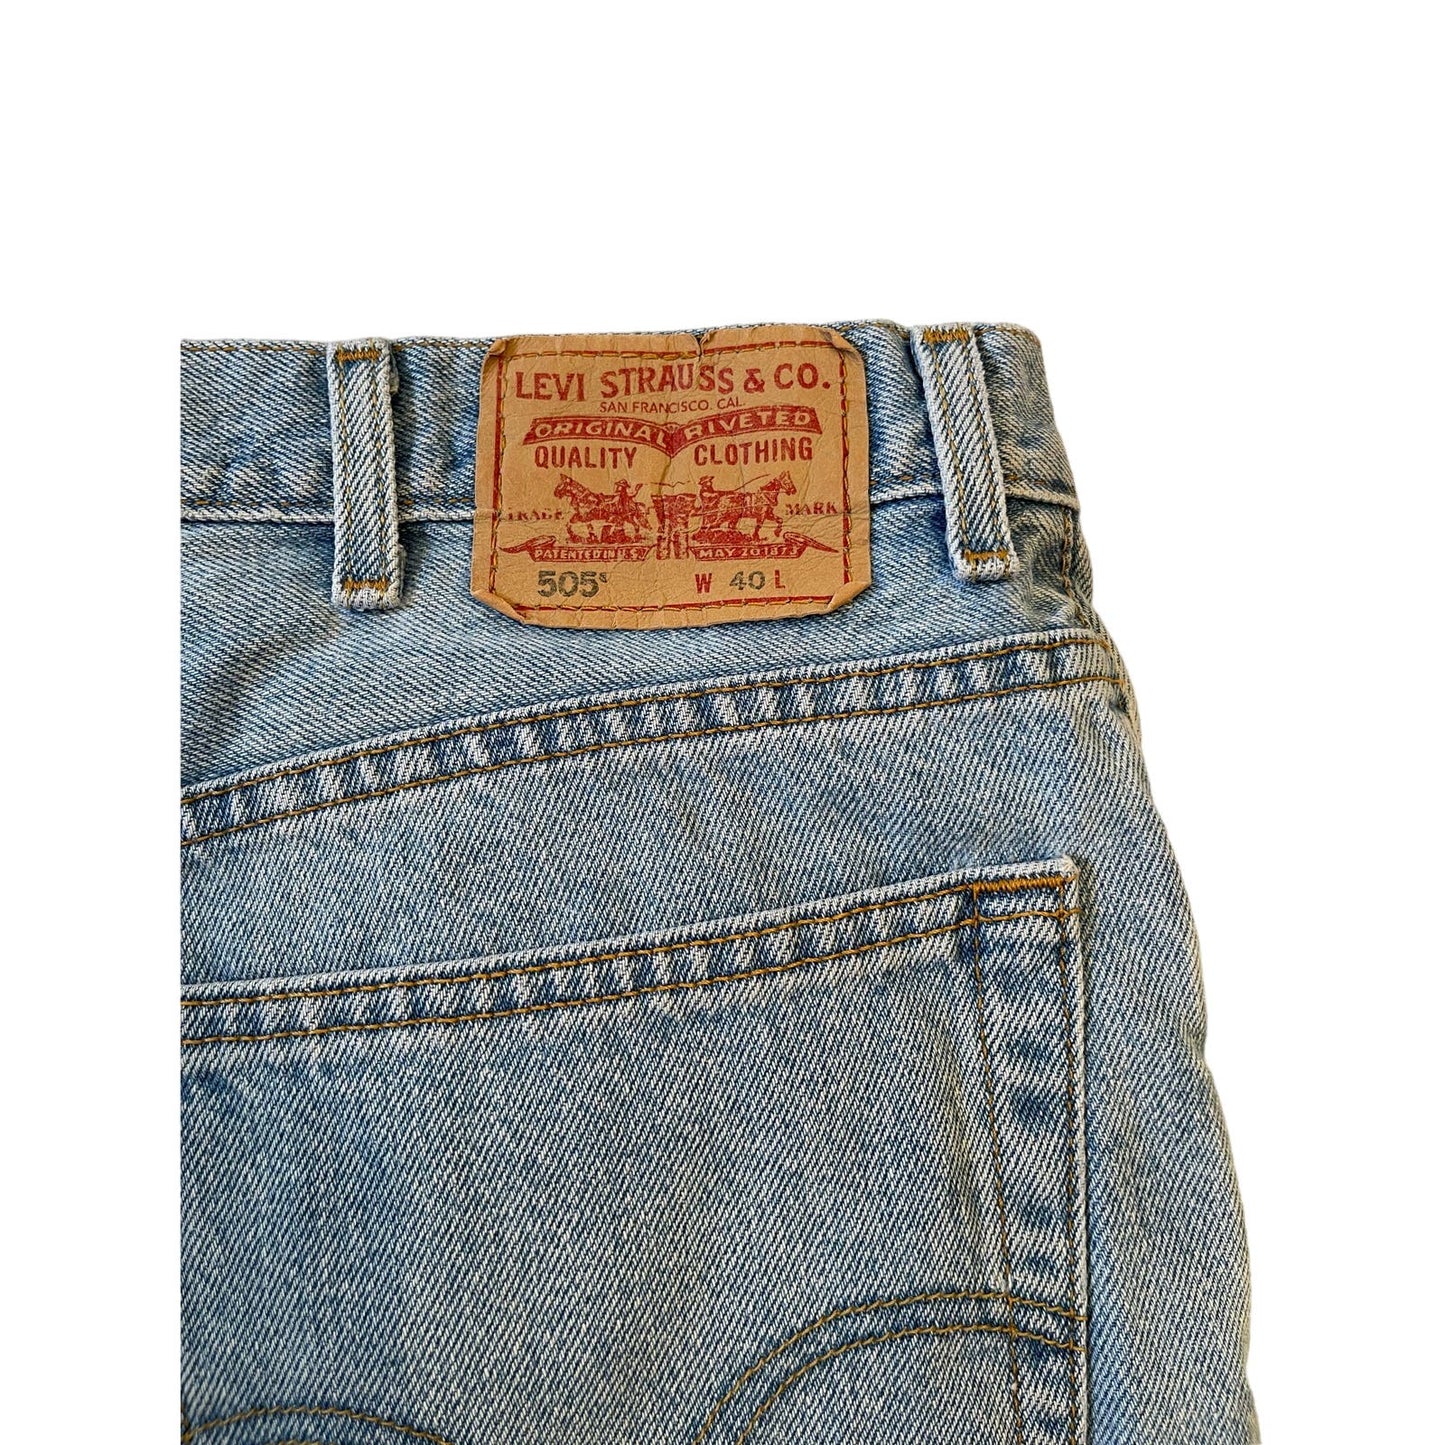 Vintage Levi's 505 Men's Denim Jean Shorts Size 40R Lighter Wash Y2K / Late 90's